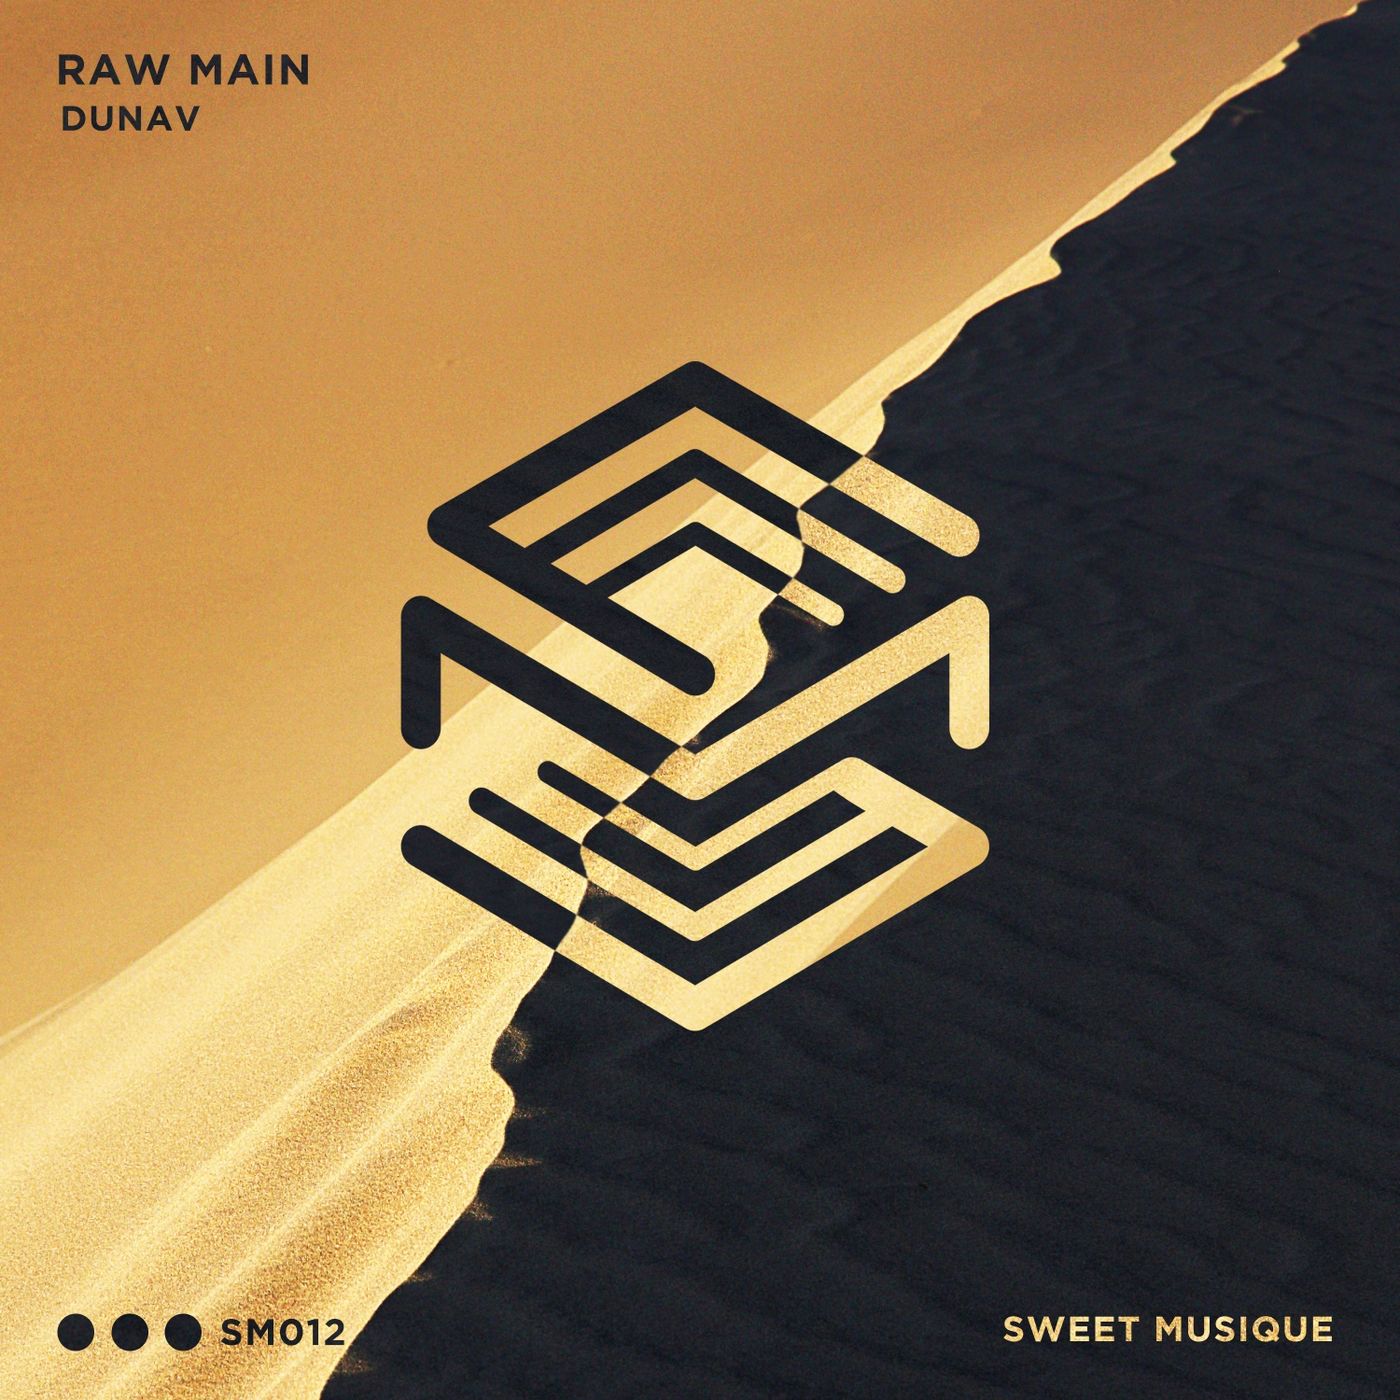 Raw Main - Dunav / Sweet Musique